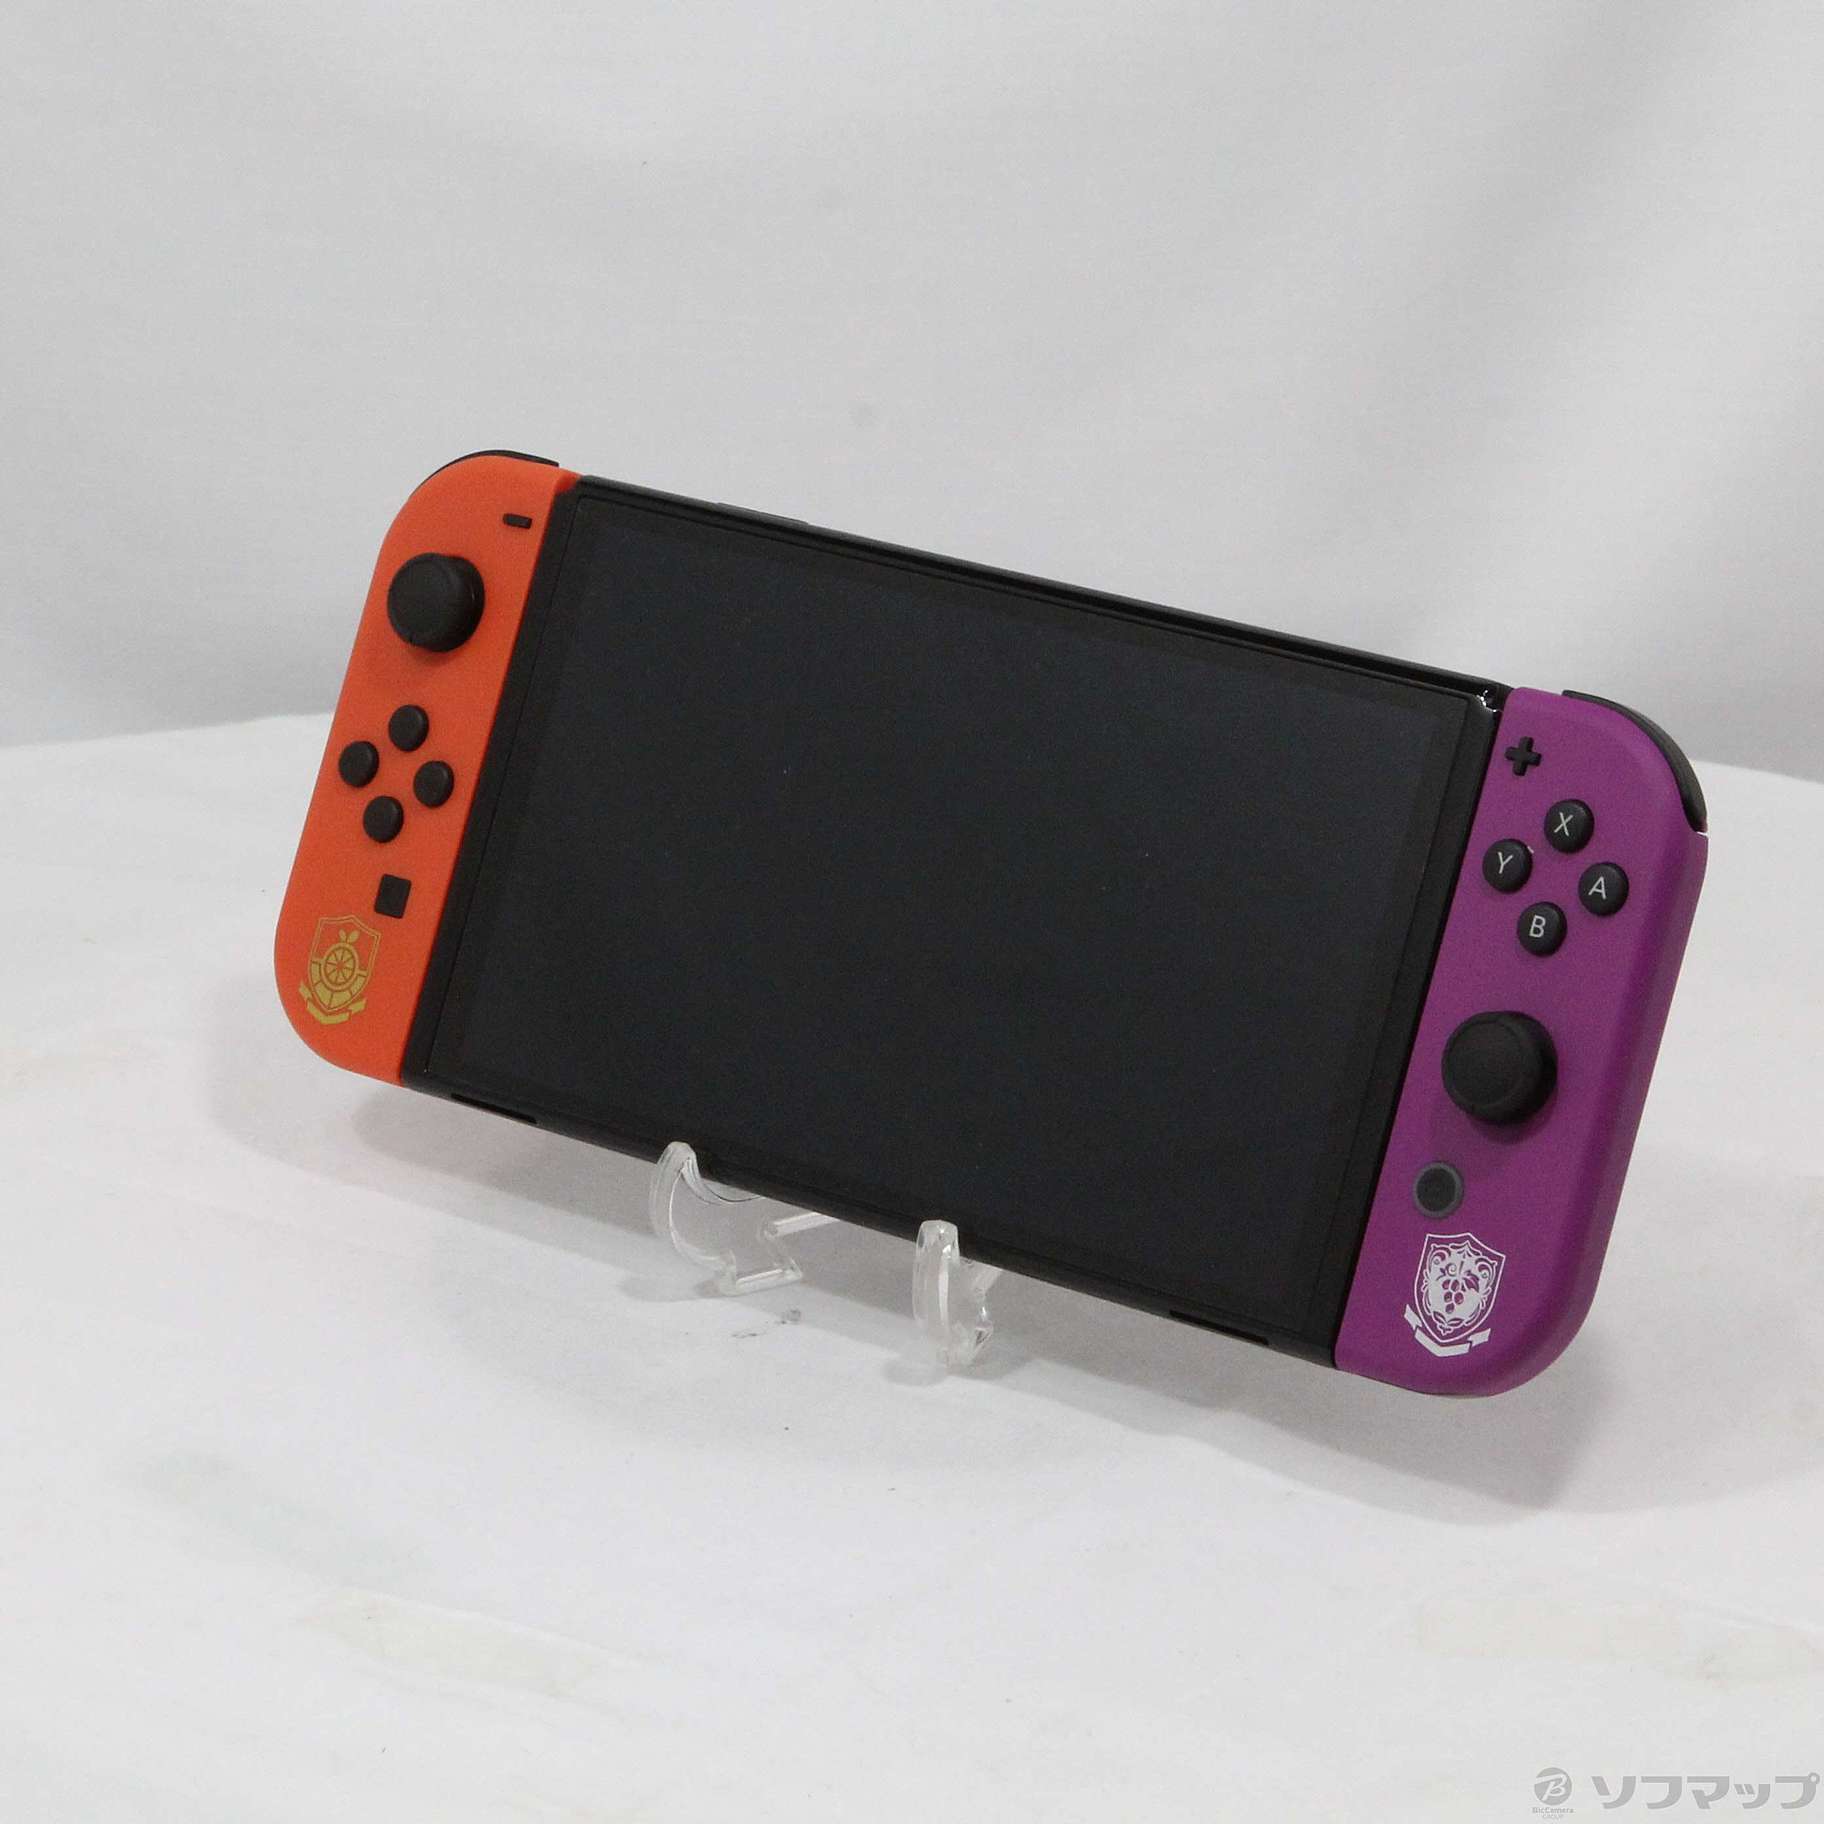 中古品〕 Nintendo Switch 有機ELモデル スカーレット・バイオレット